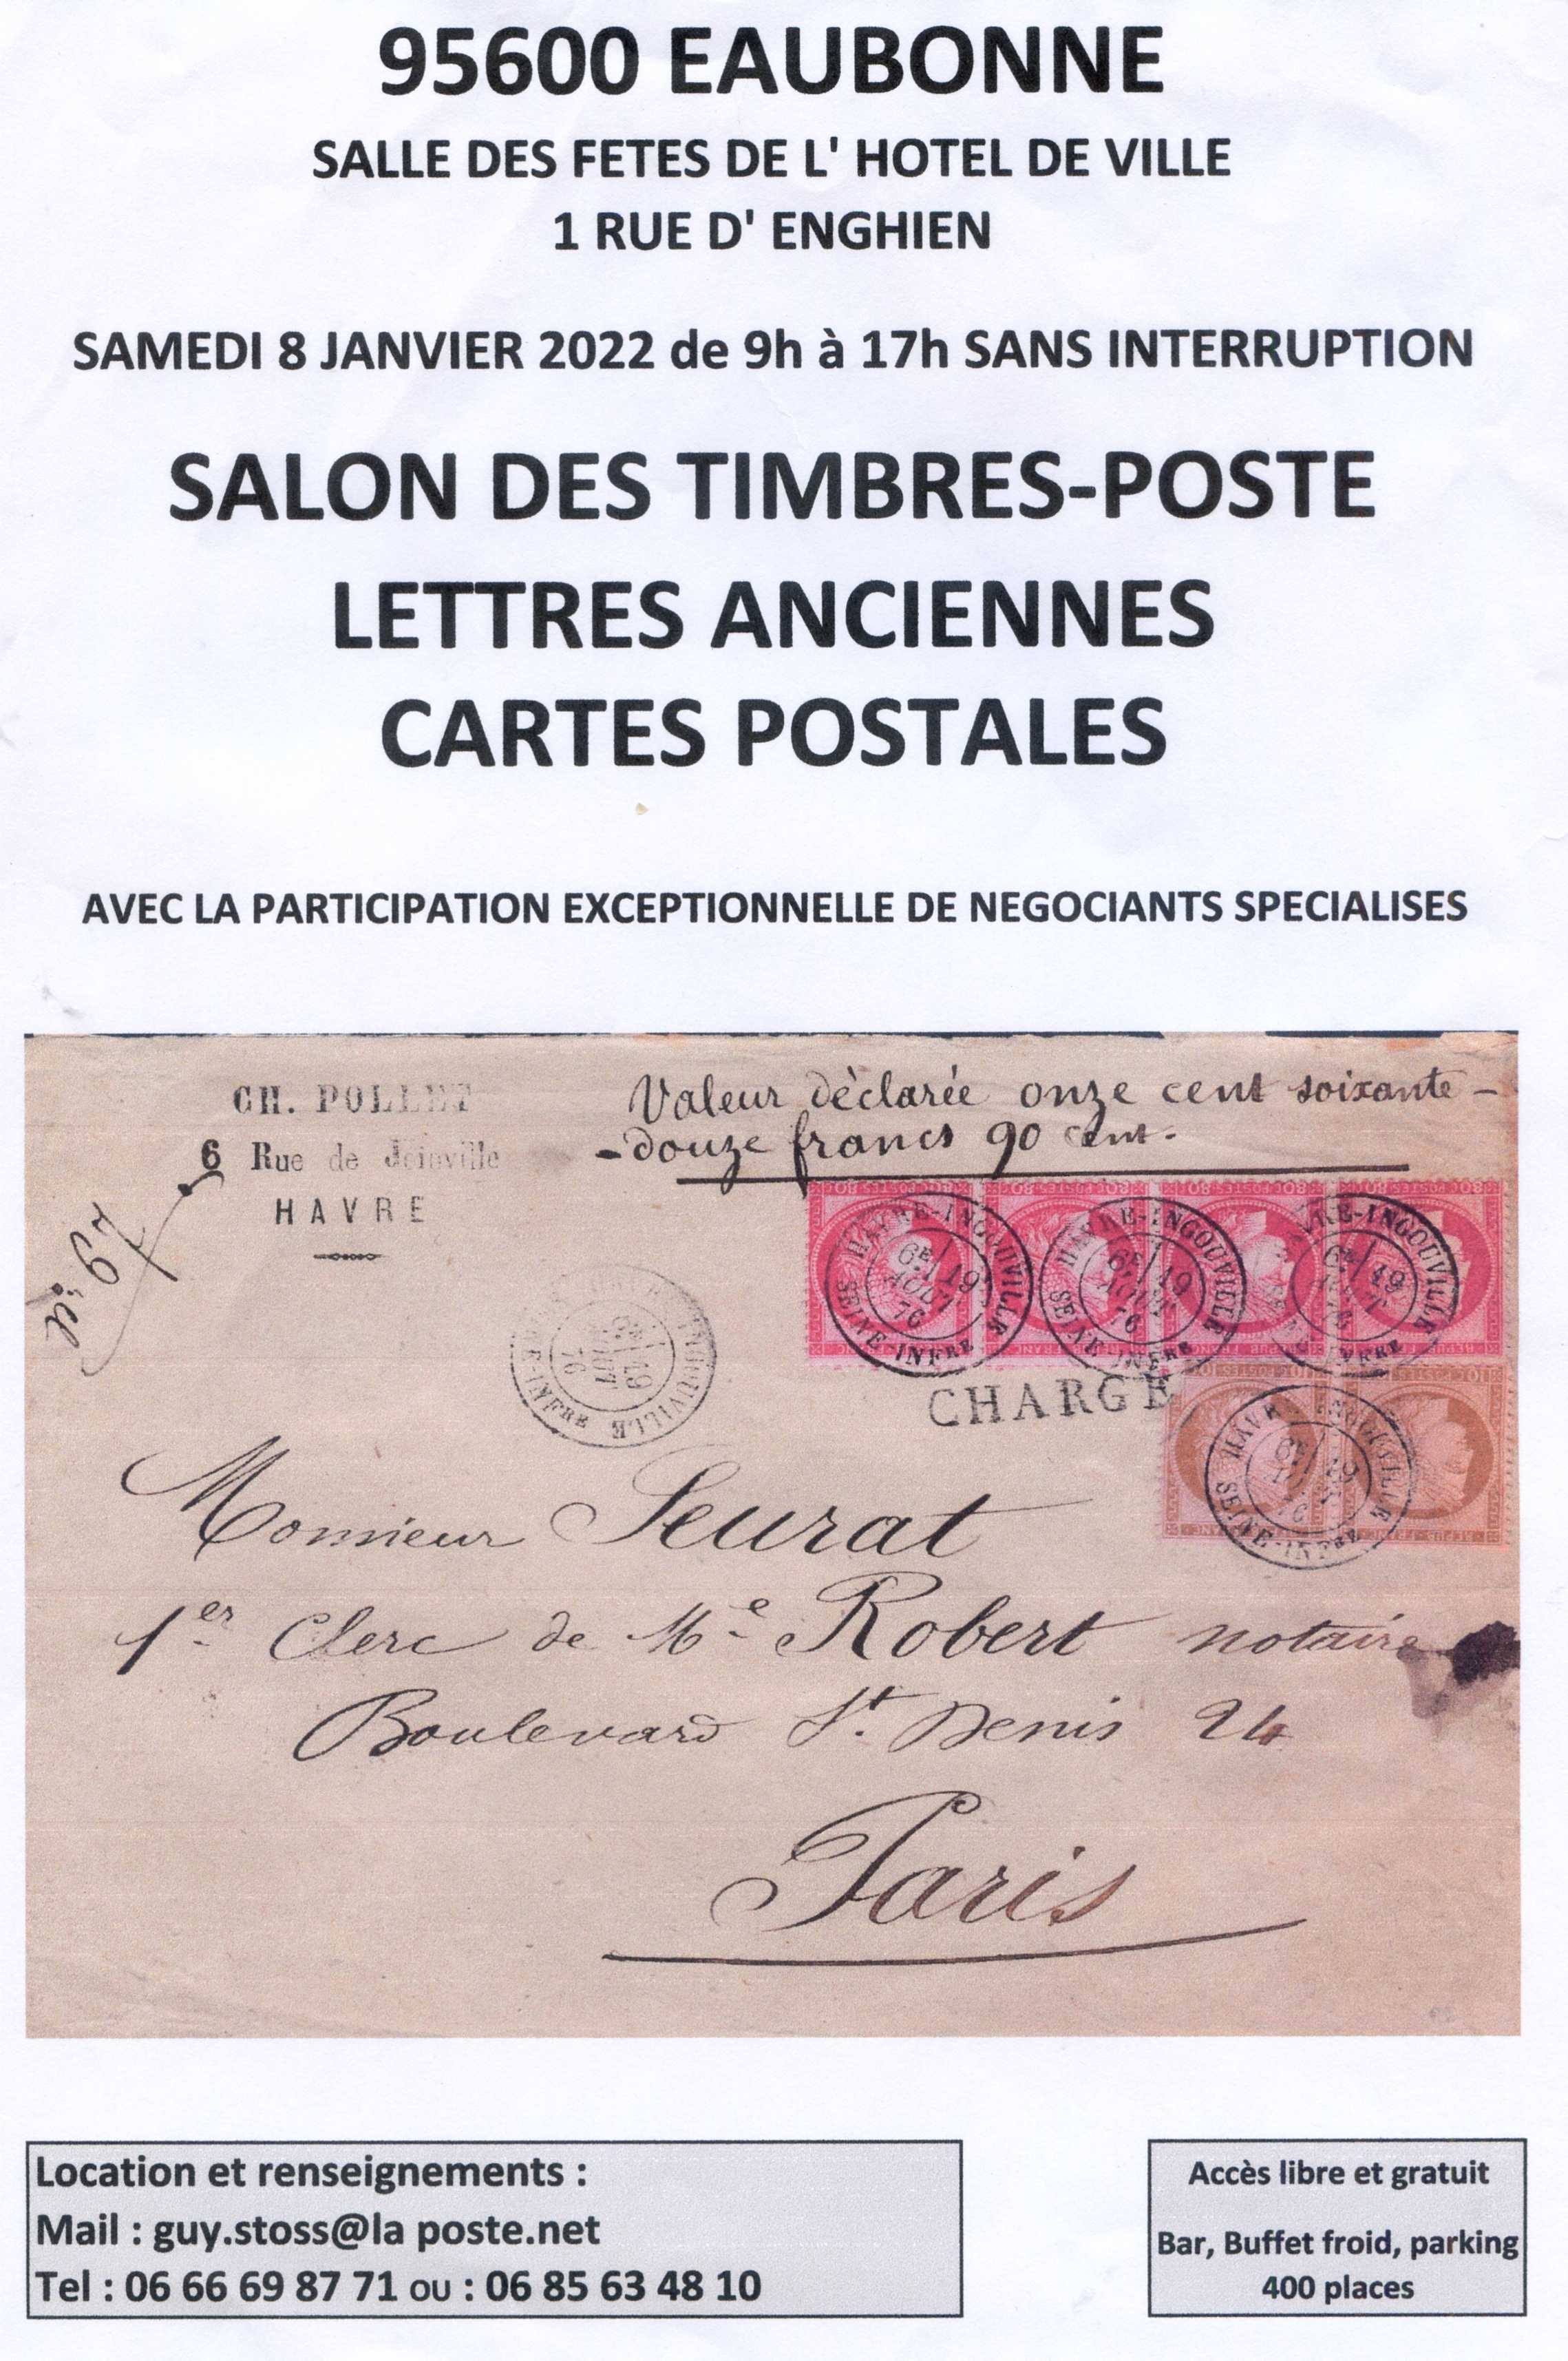 Salon des timbres-poste Eaubonne 8 janvier 2022